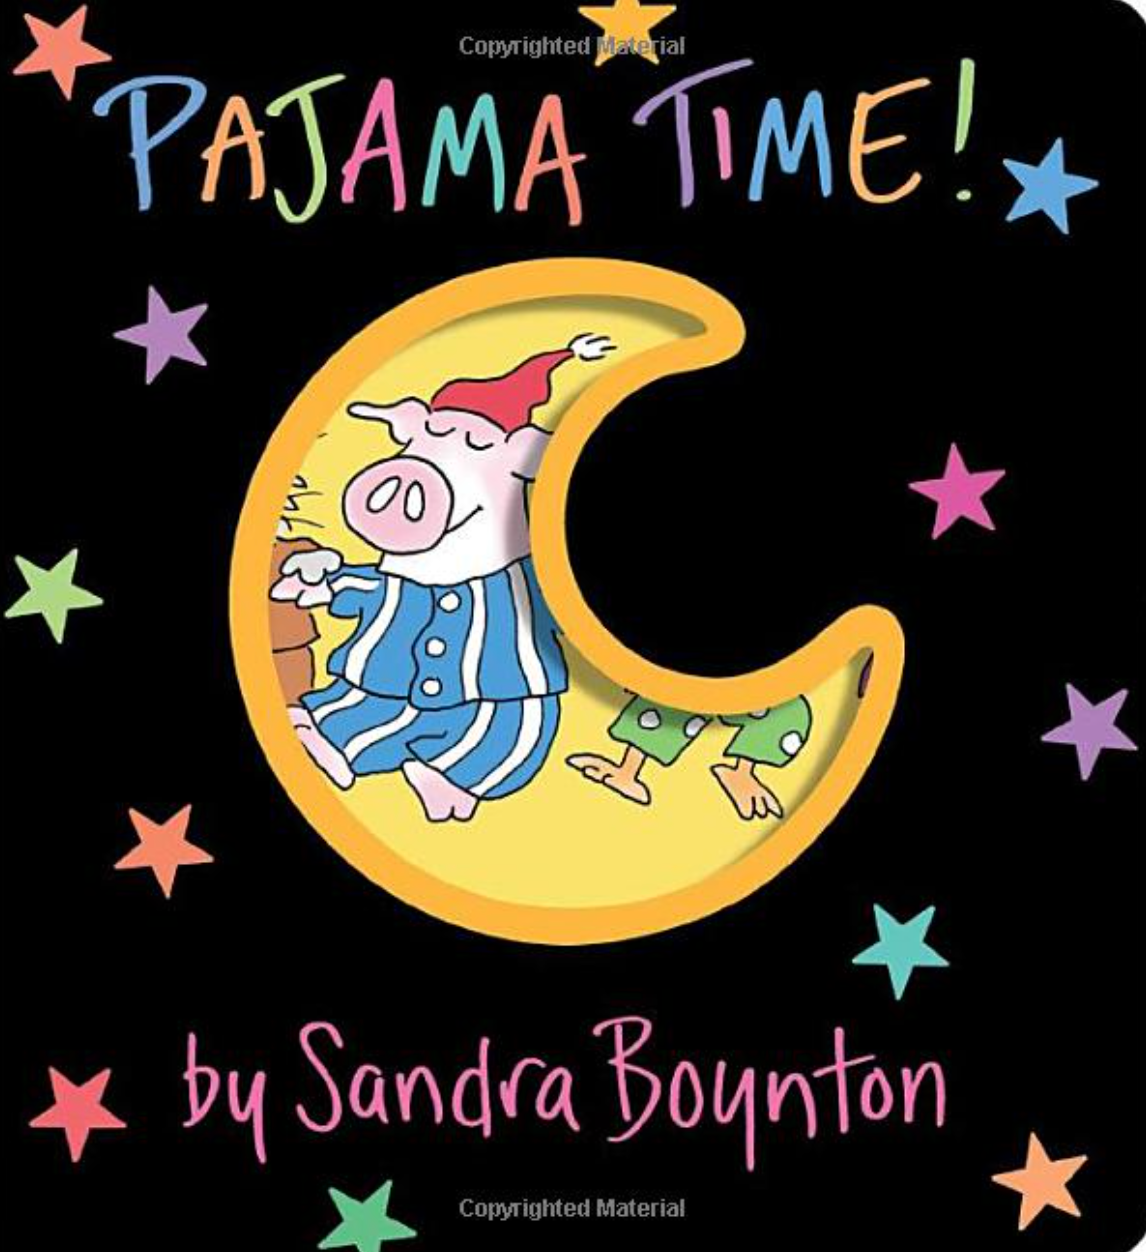 PAJAMA TIME BY SANDRA BOYNTON